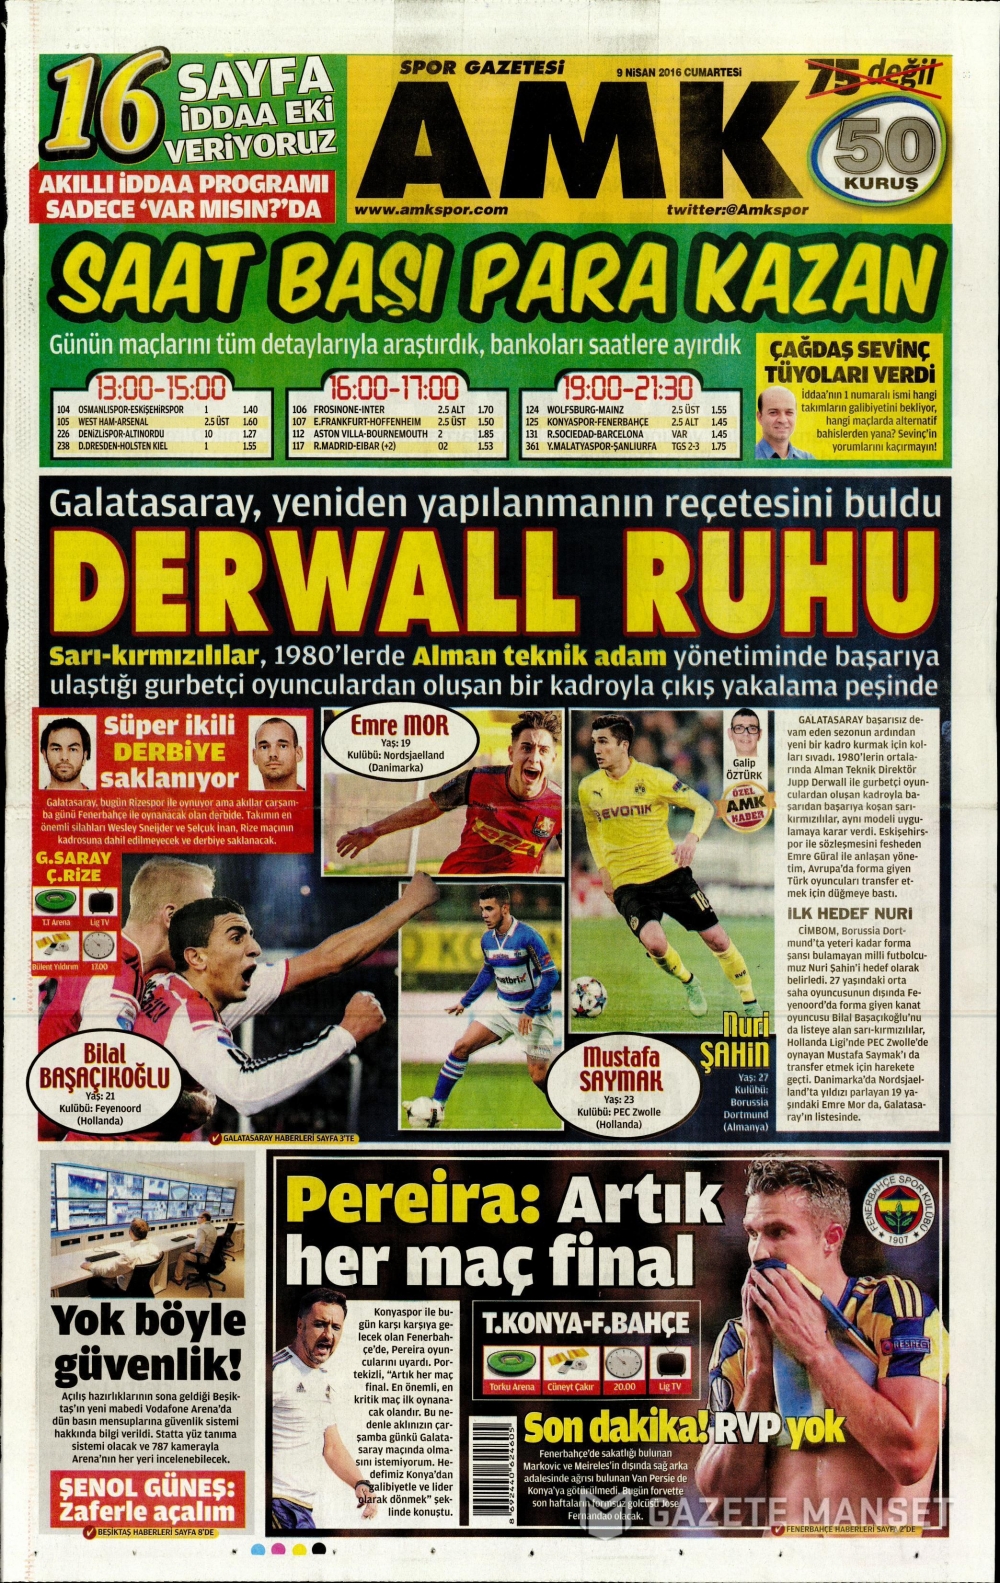 09 04 2016 tarihli Spor Gazetelerin 1. sayfaları 3